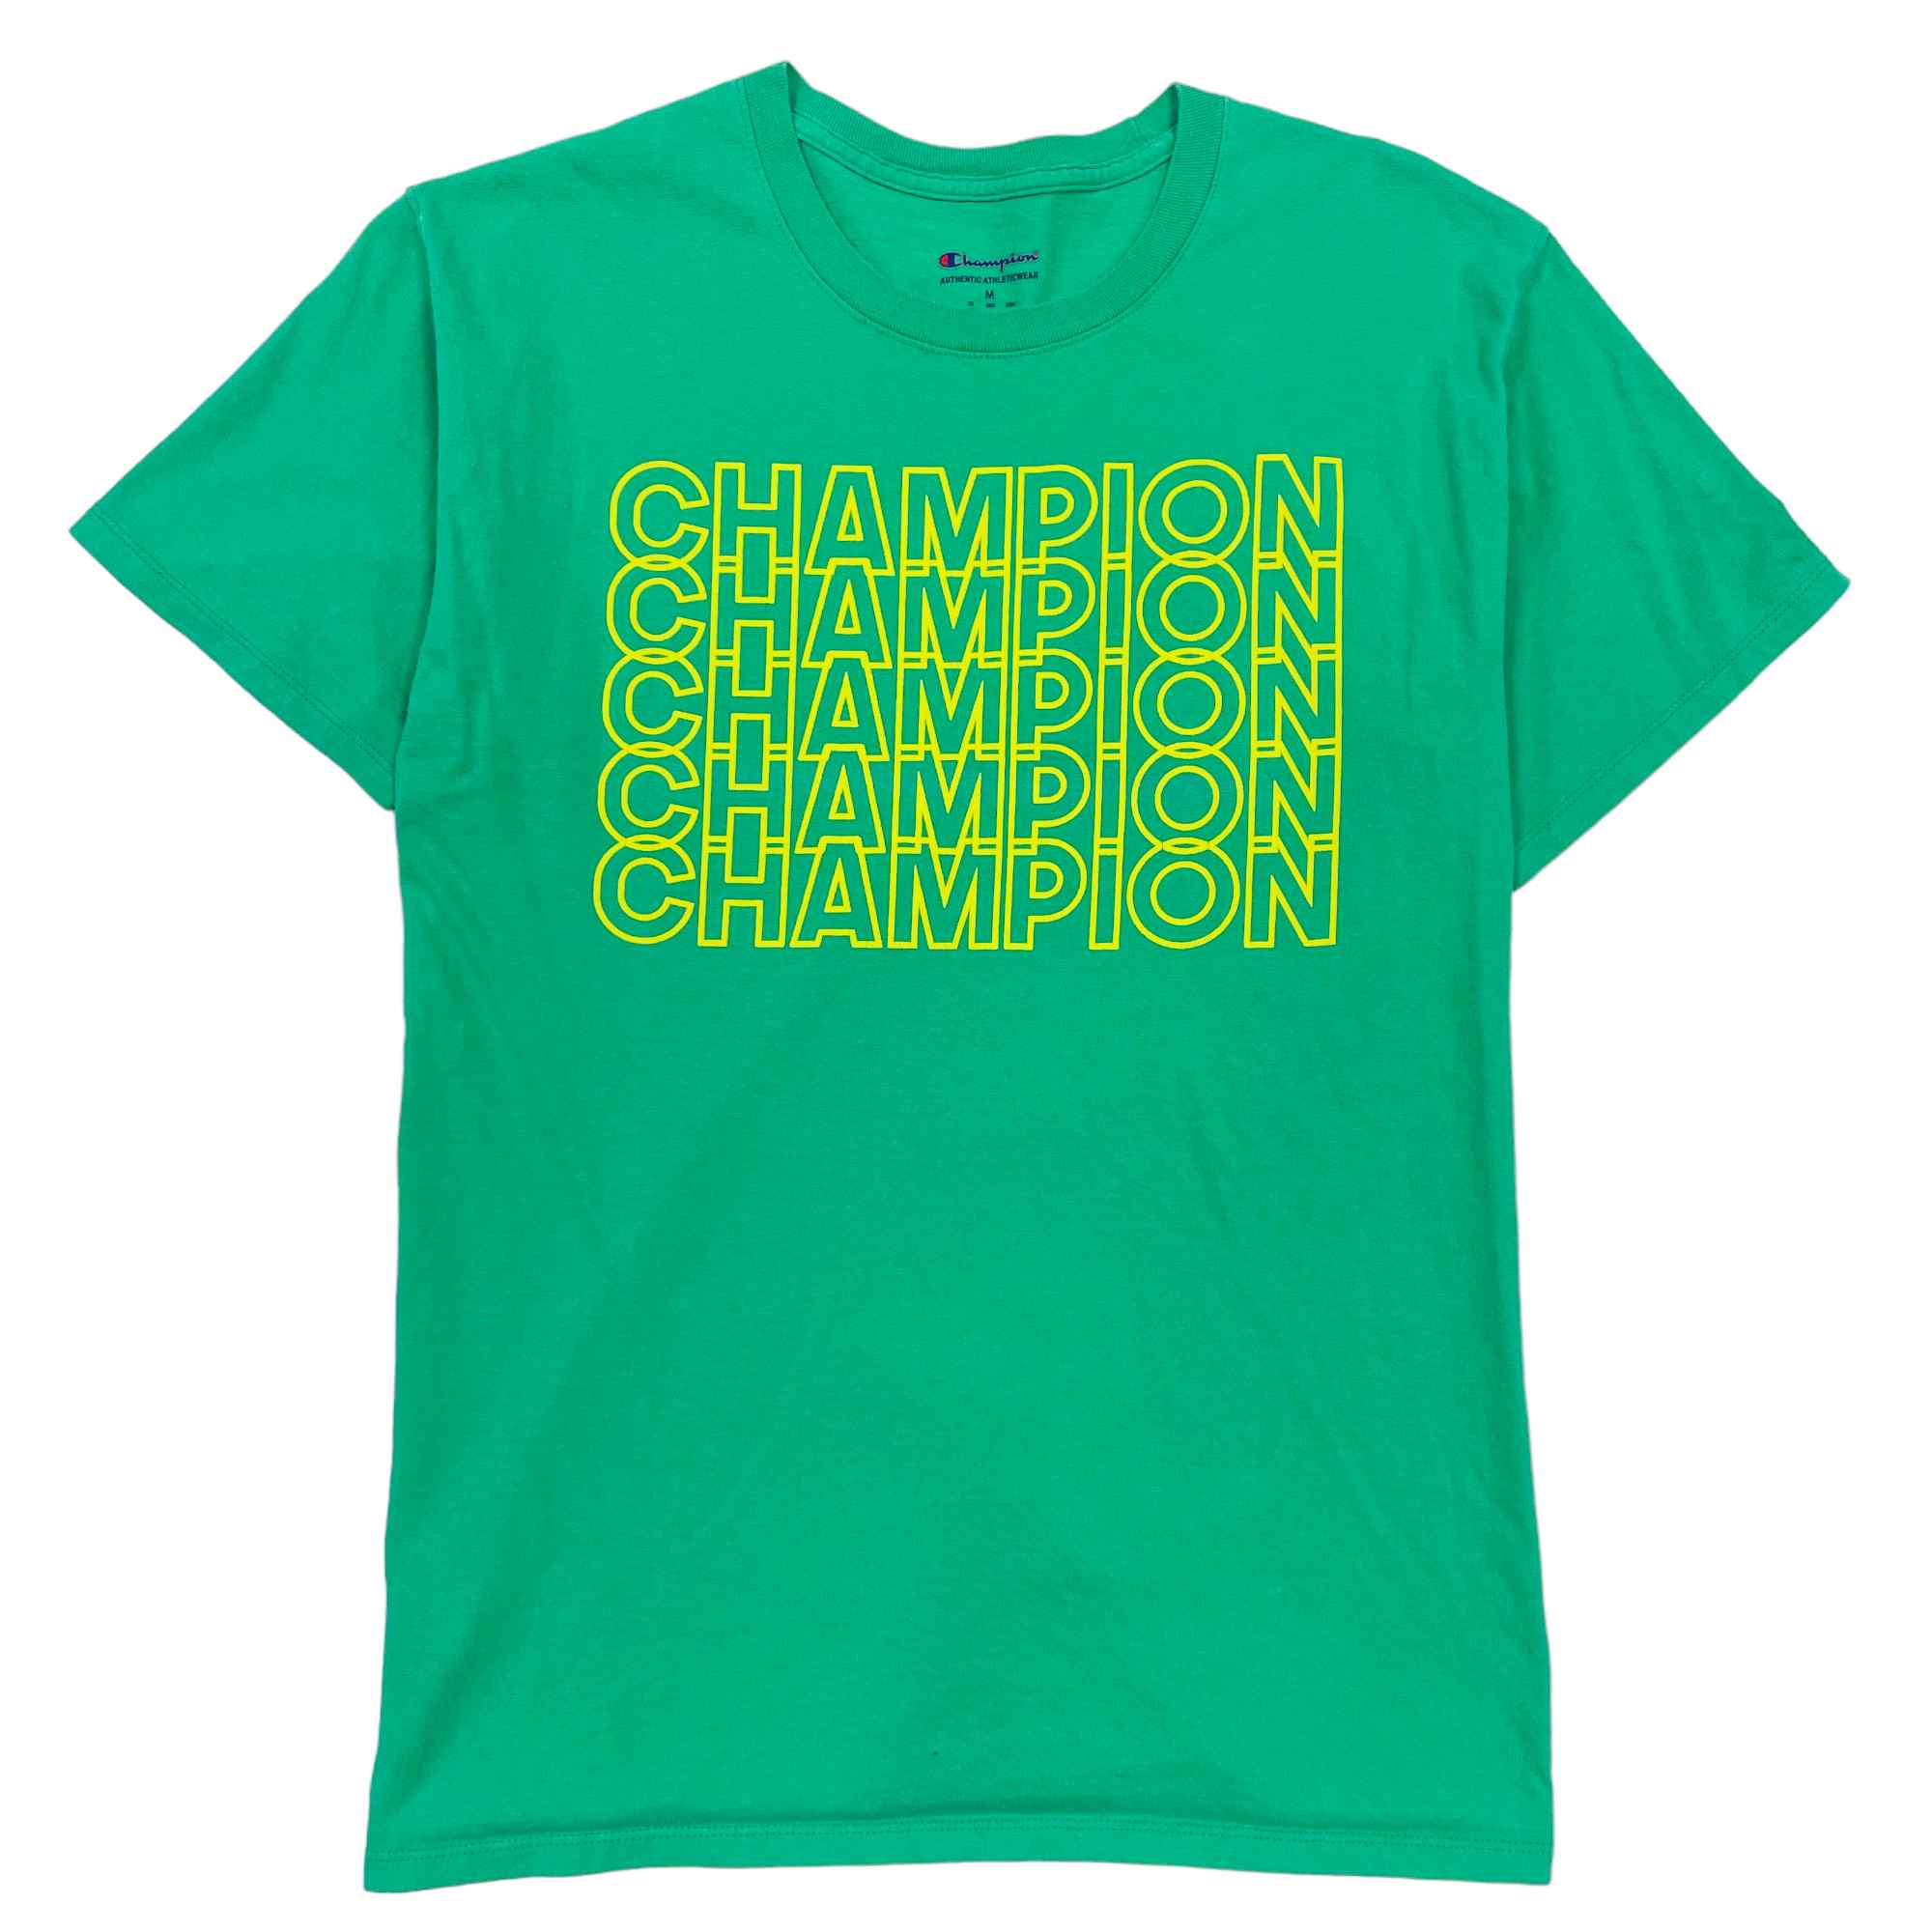 Champion T-Shirt - Medium